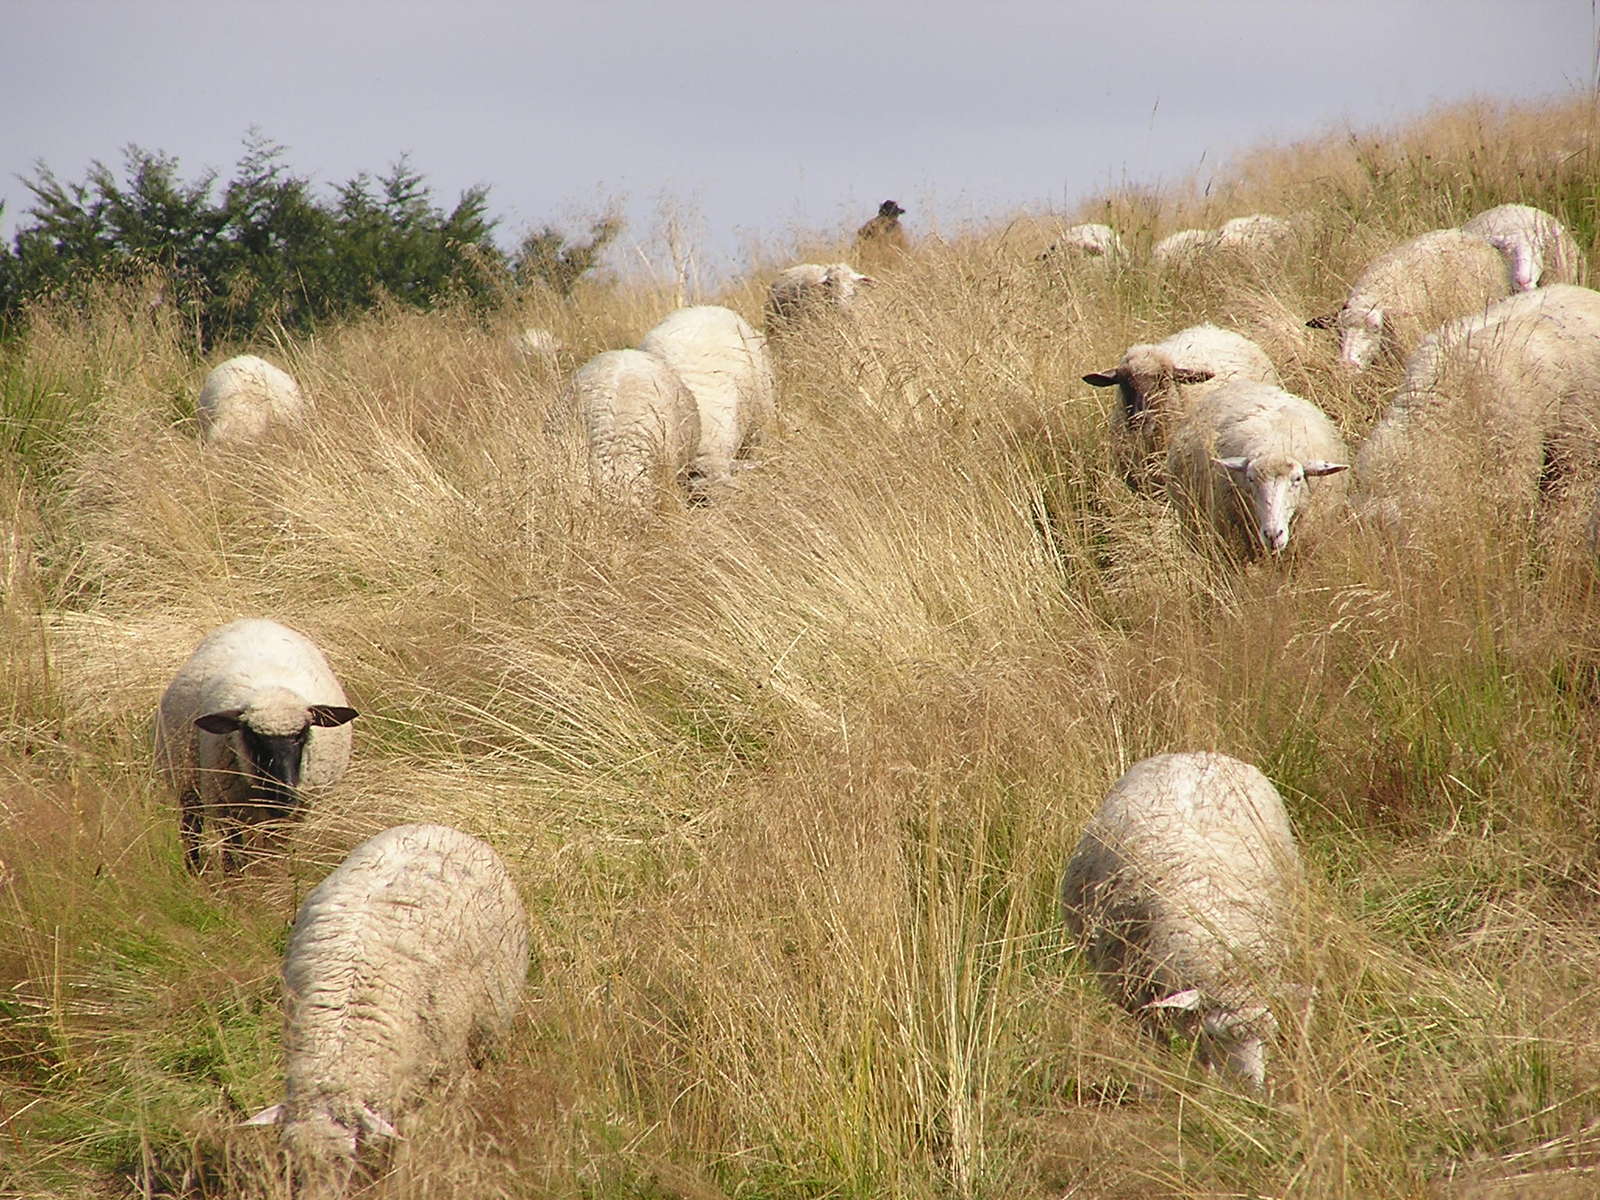 several sheep walk through the tall grass